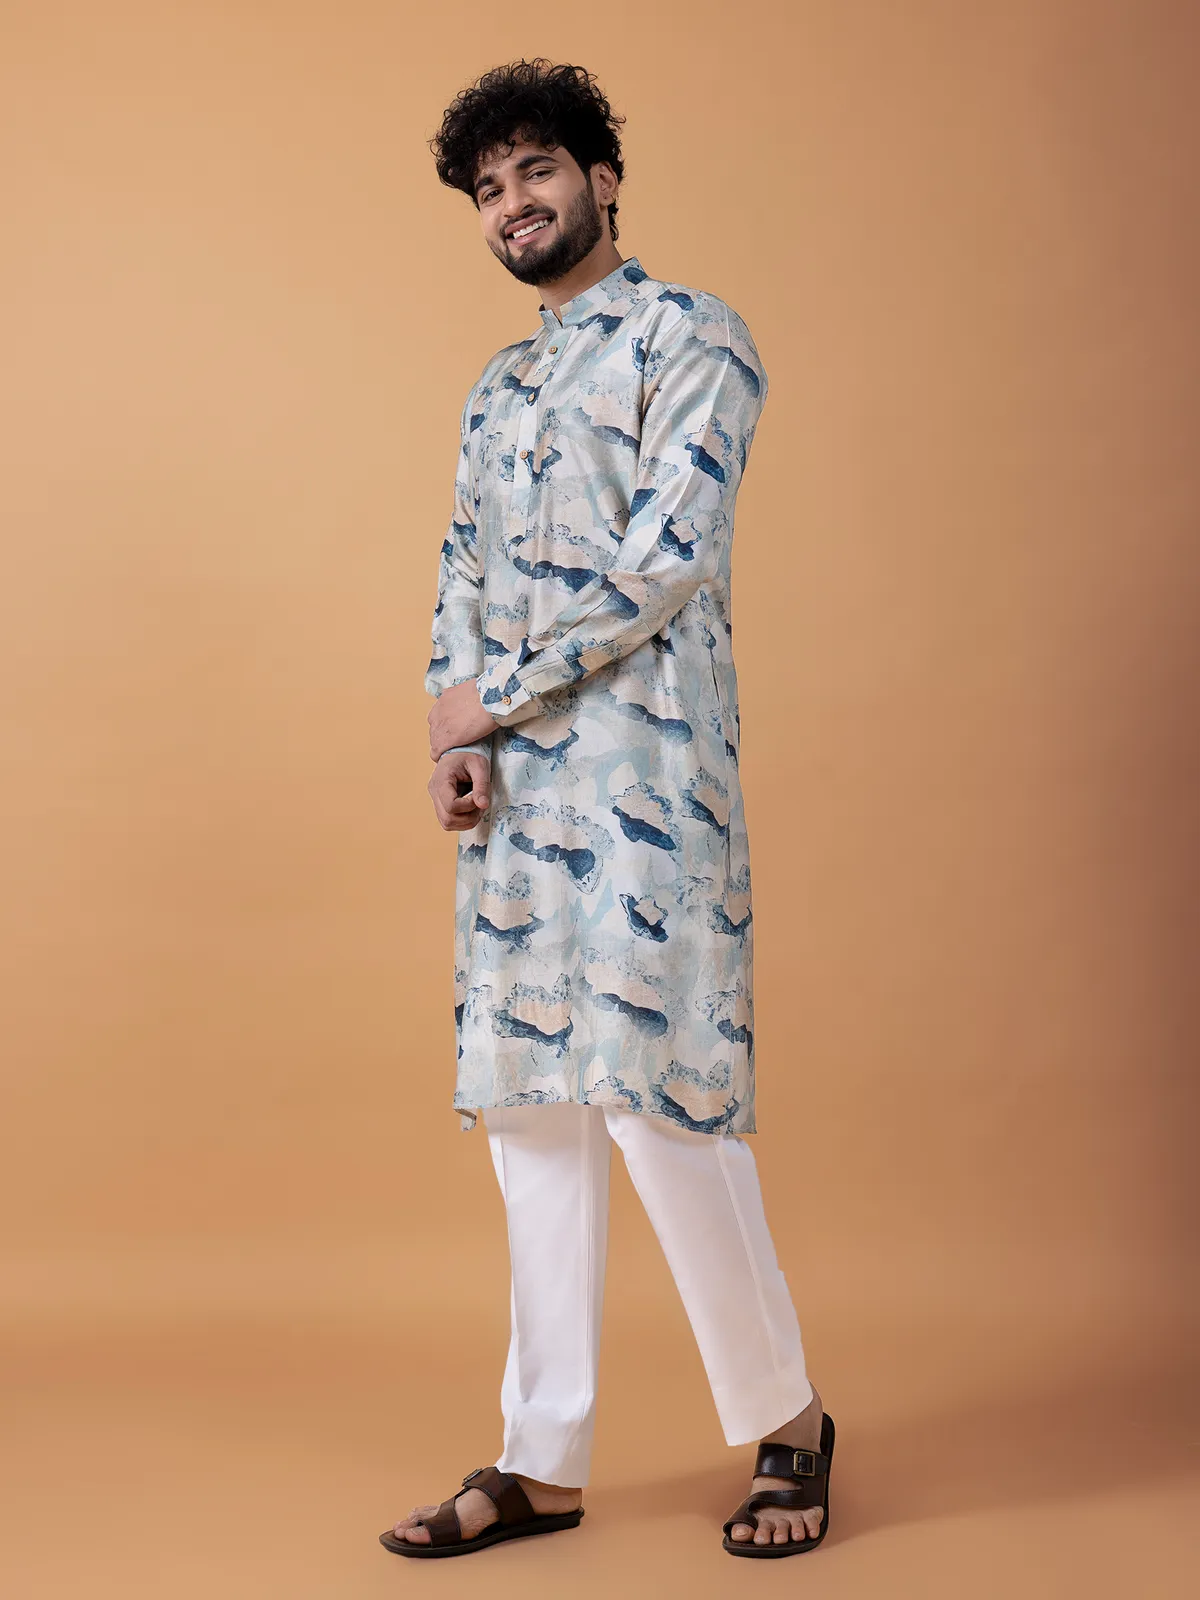 Cotton printed  Men Kurta pajama in sky blue